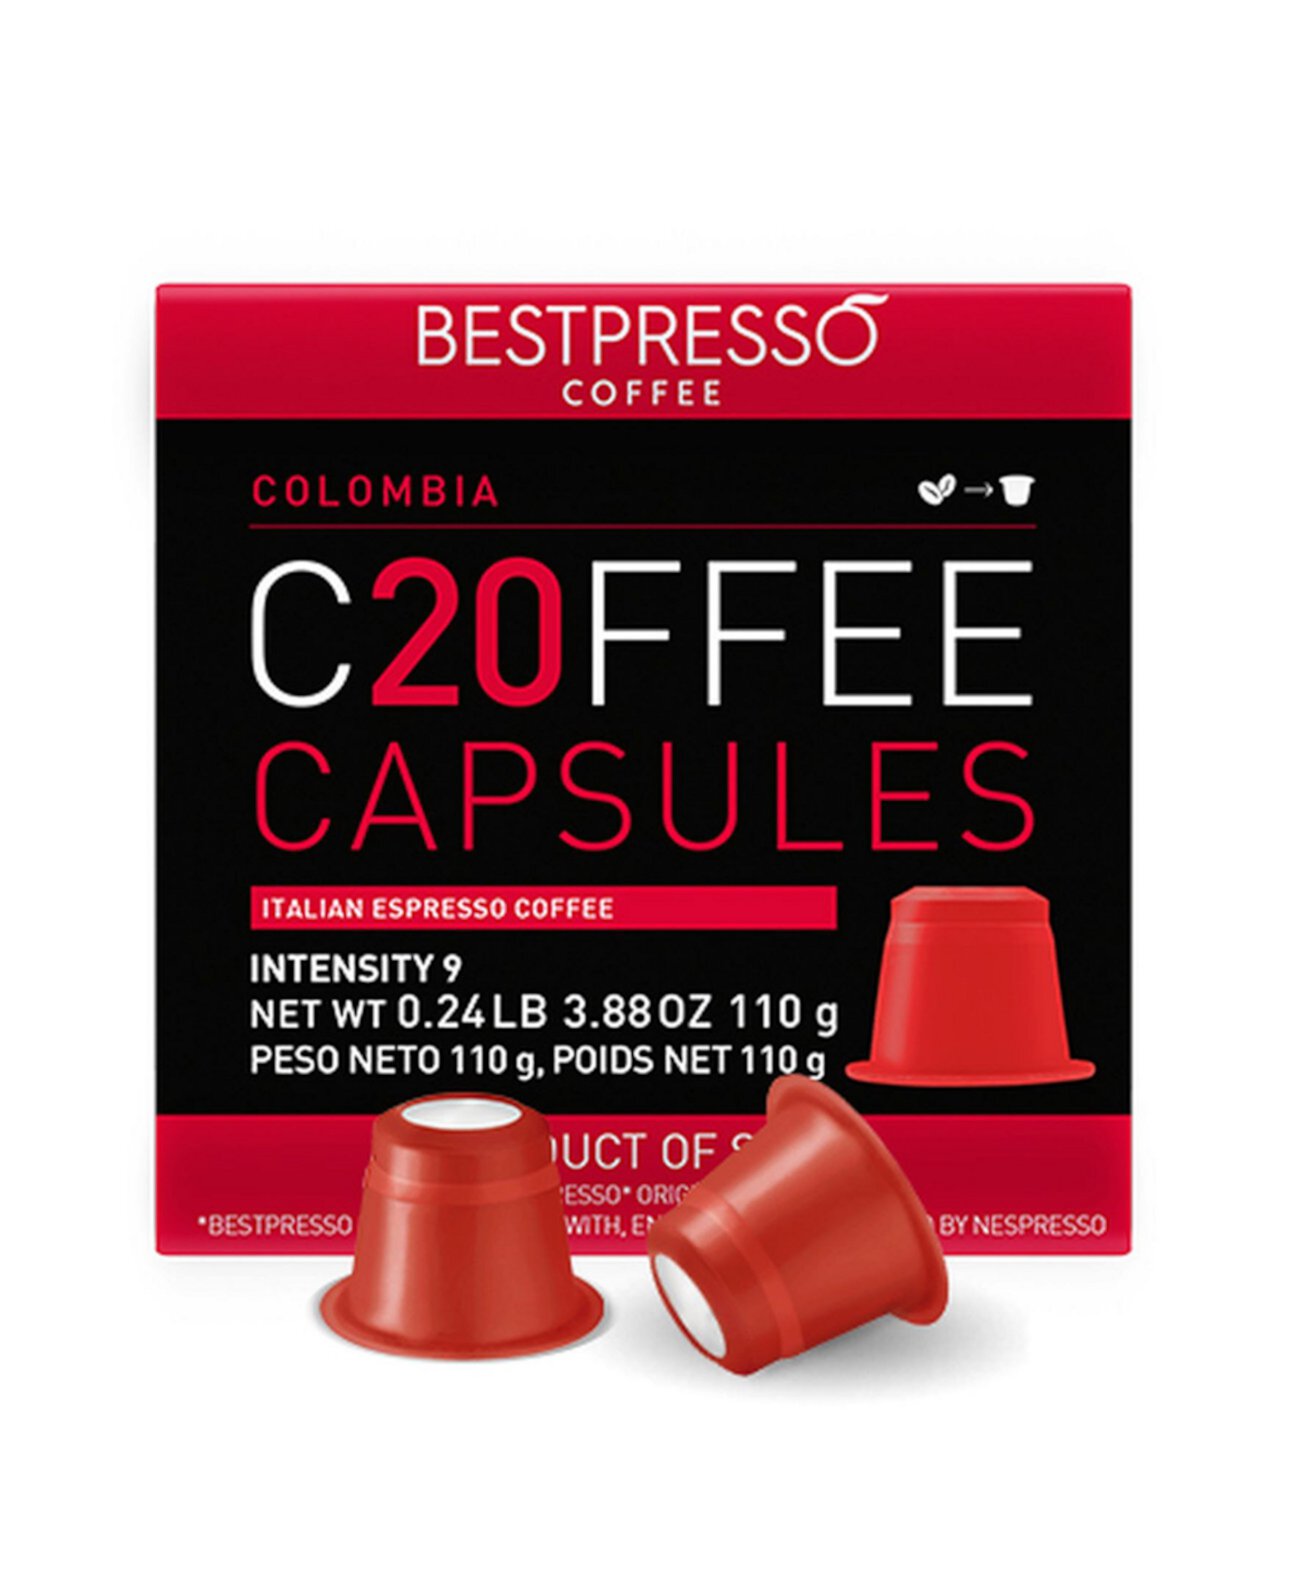 Кофе со вкусом Колумбии, 20 капсул в упаковке для оригинальной кофемашины Nespresso Bestpresso